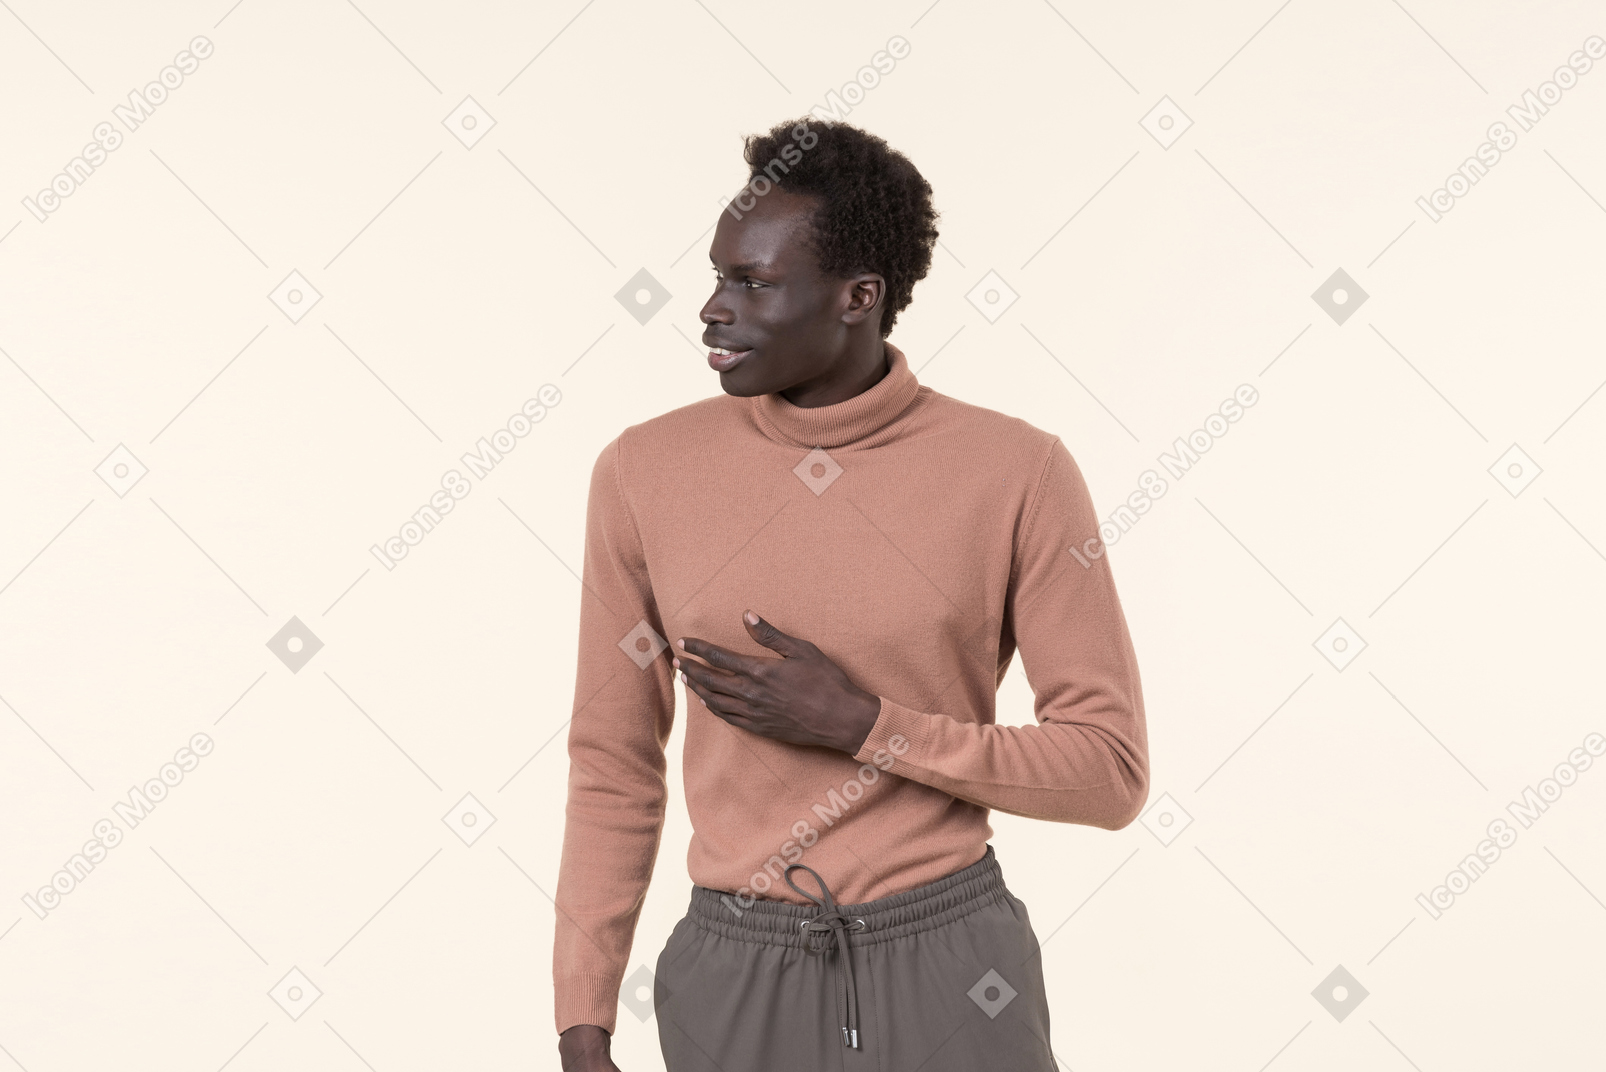 베이지 색 터틀넥에 젊은 흑인 남자와 흰색 배경에 부담없이 서있는 회색 트레이닝 복 바지